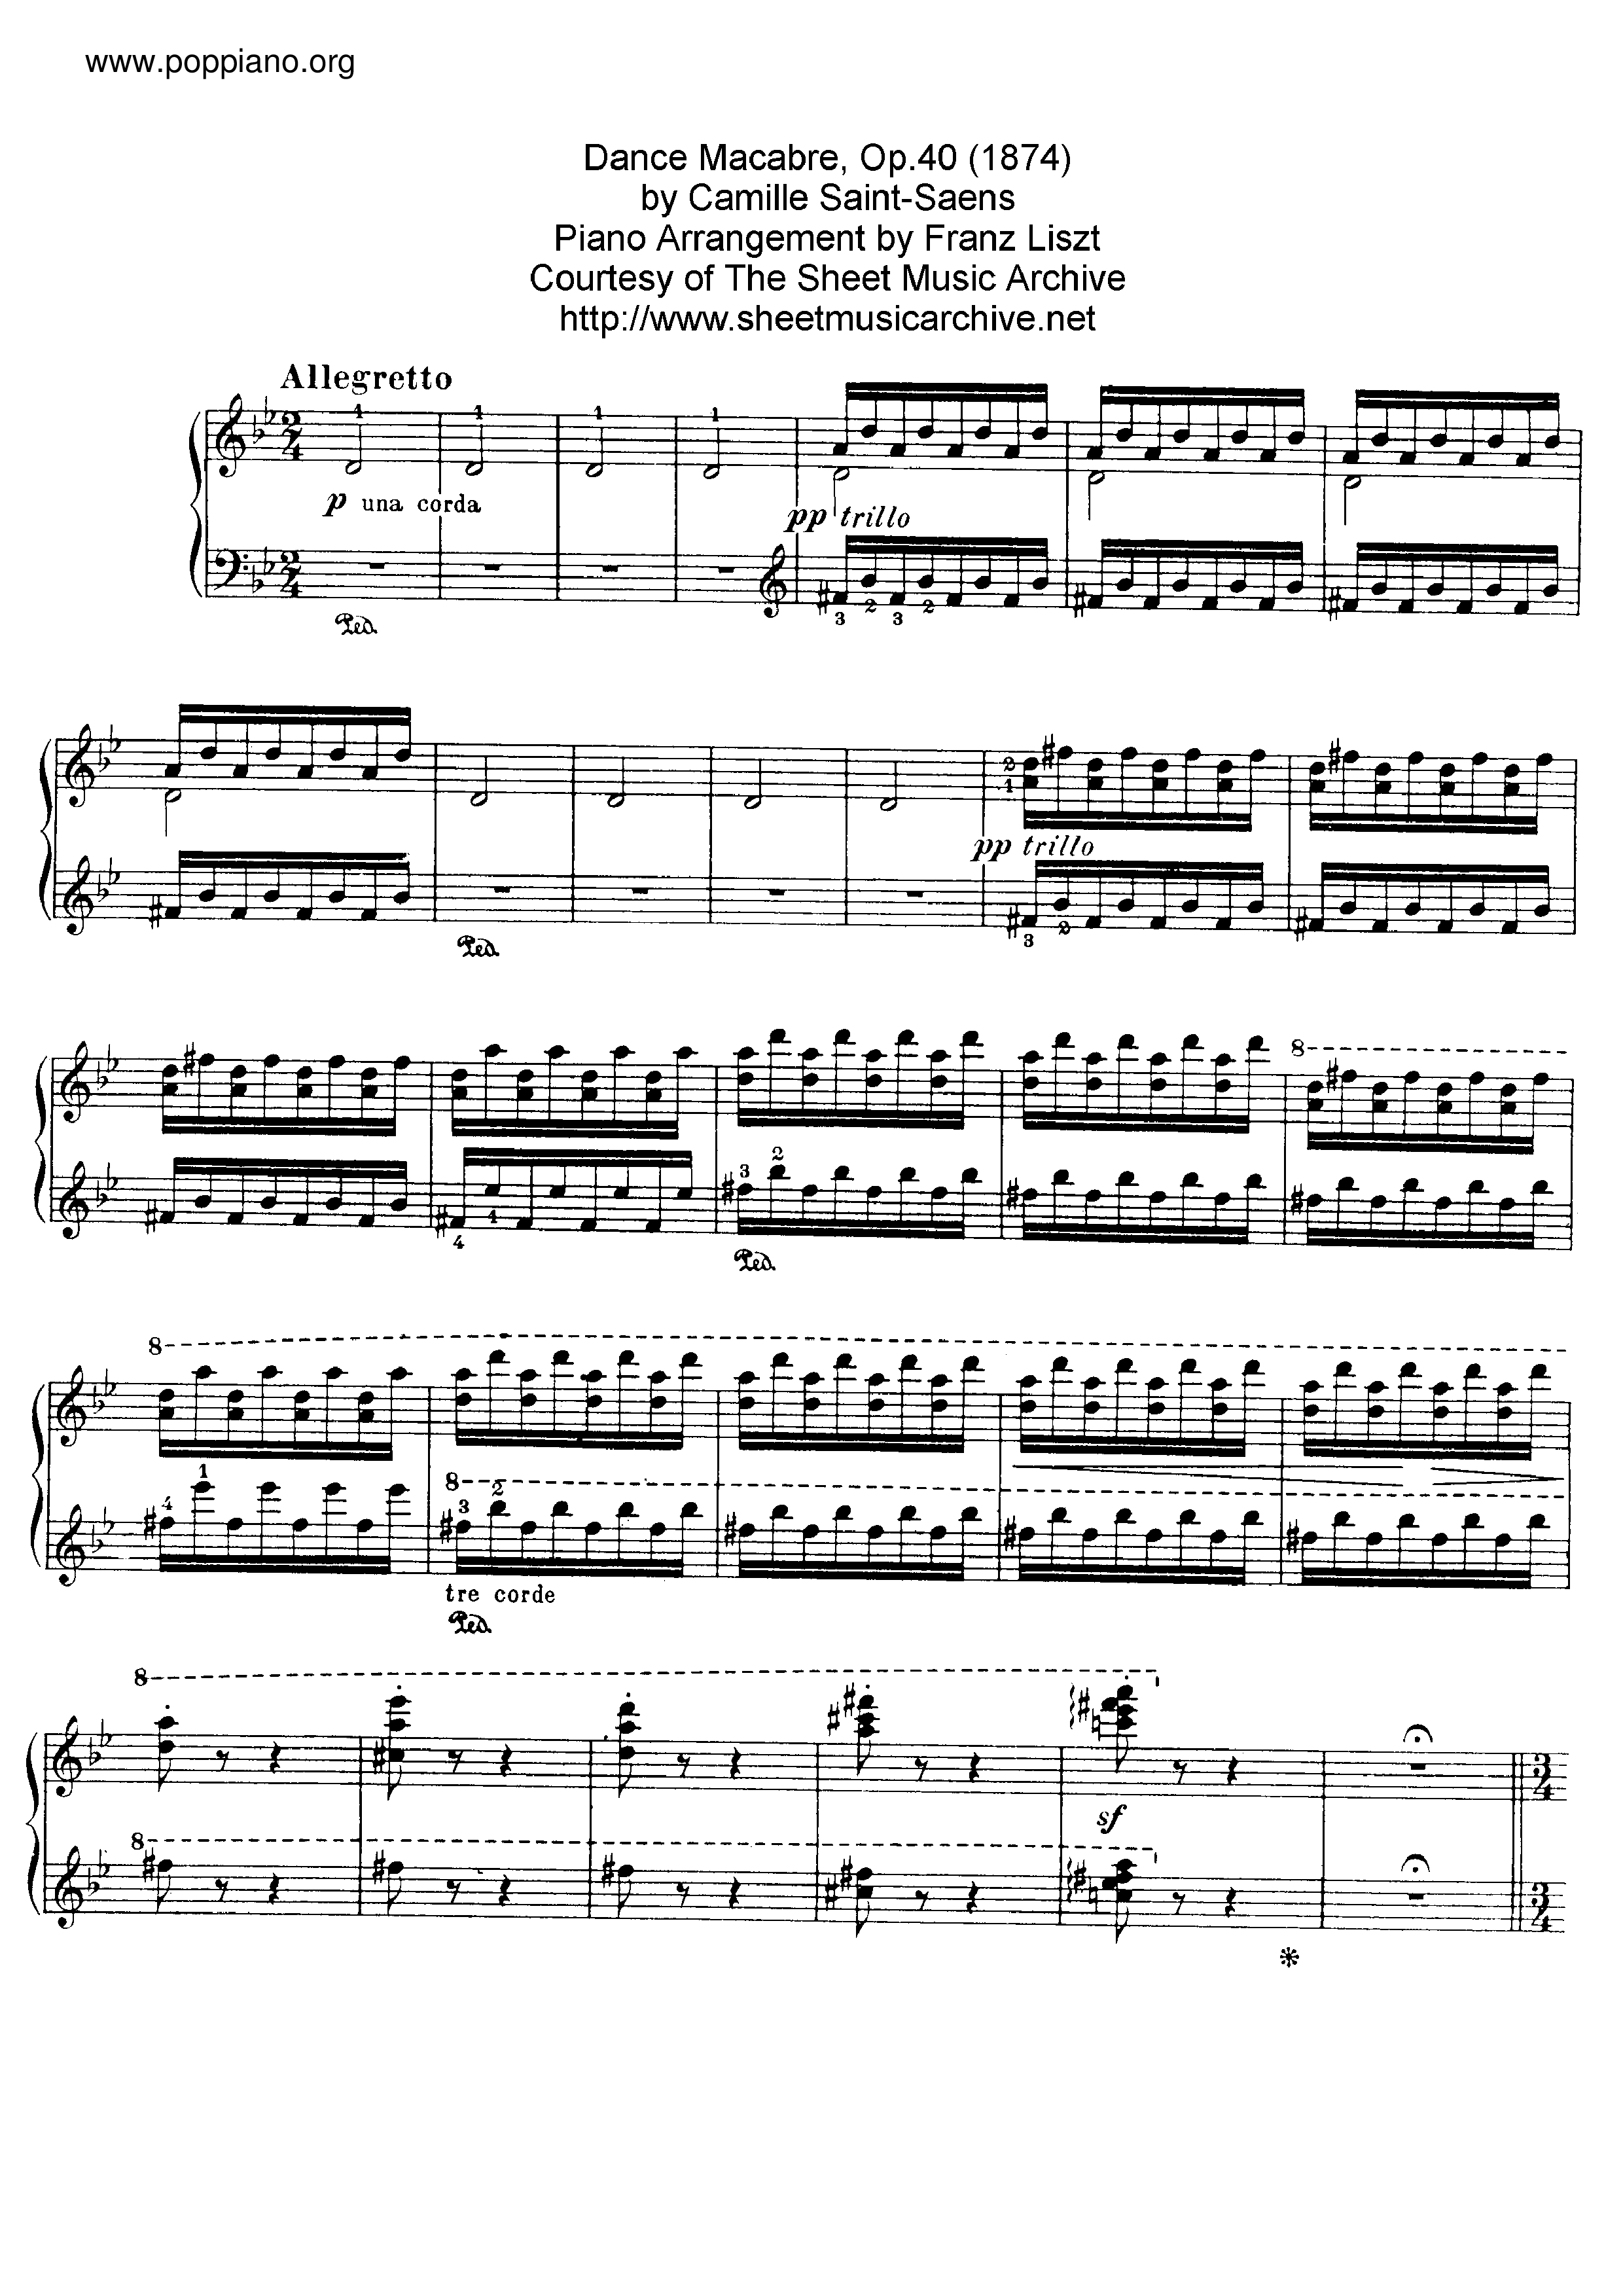 Danse Macabre Op.40, by Saint-Saens, S.555琴譜